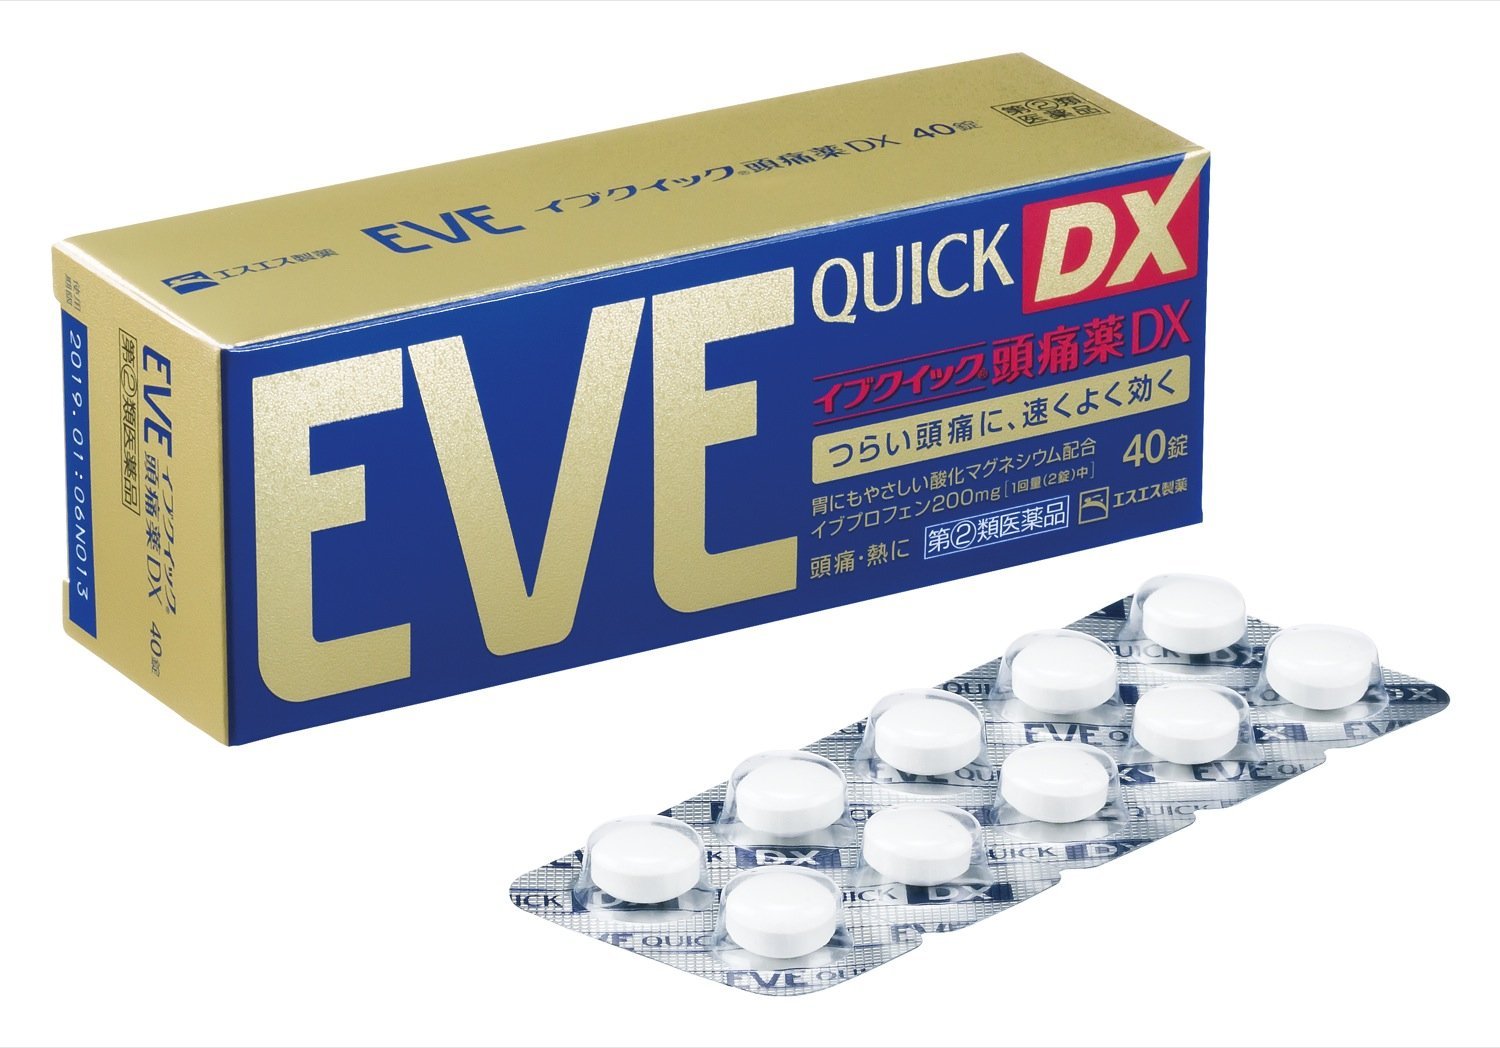 日本必買居家良藥 EVE Quick DX止痛錠